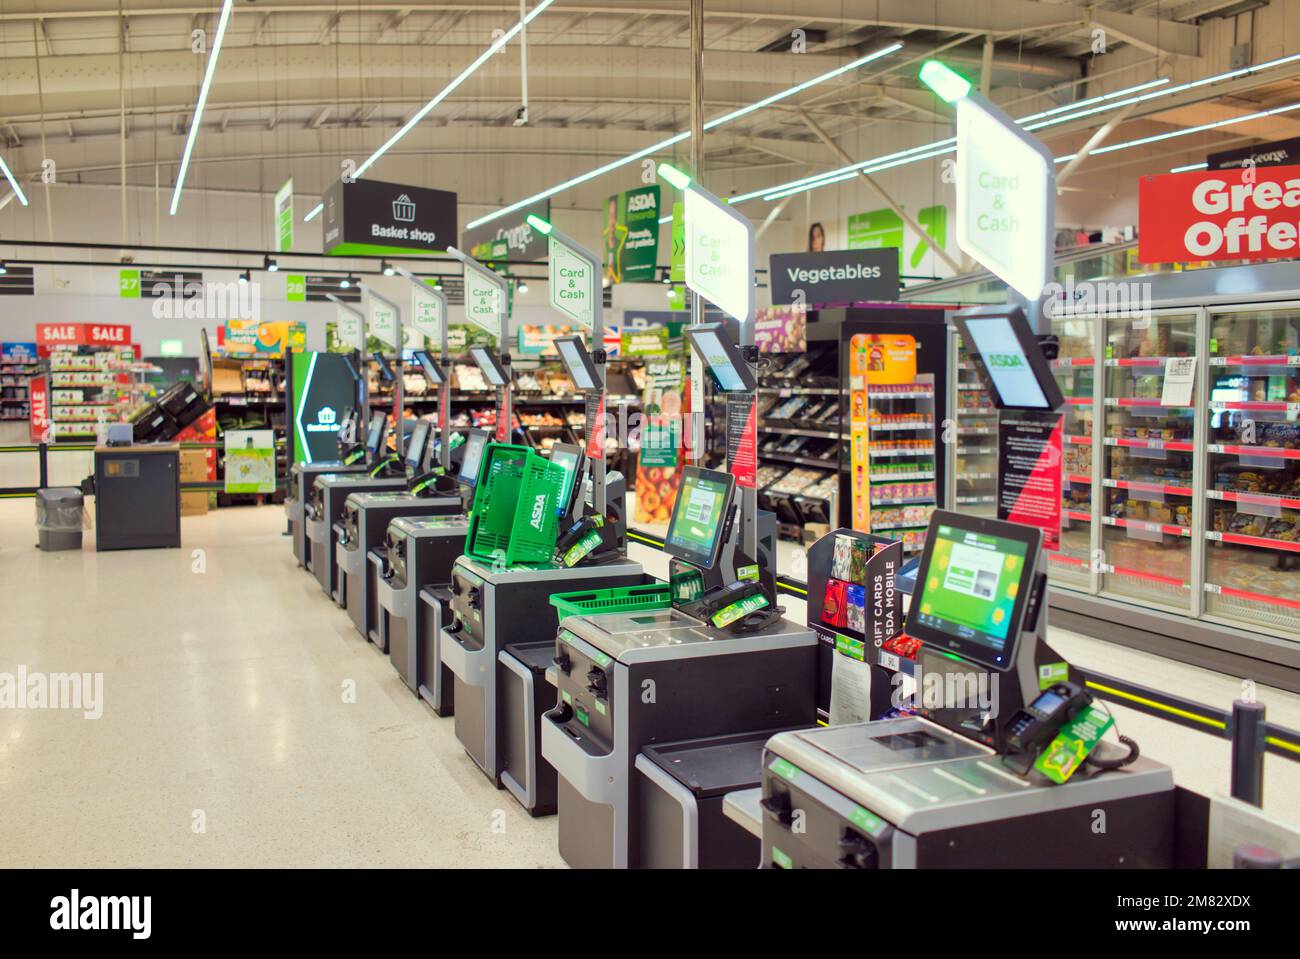 Supermercato Asda macchine self-service interne per il check-out Foto Stock